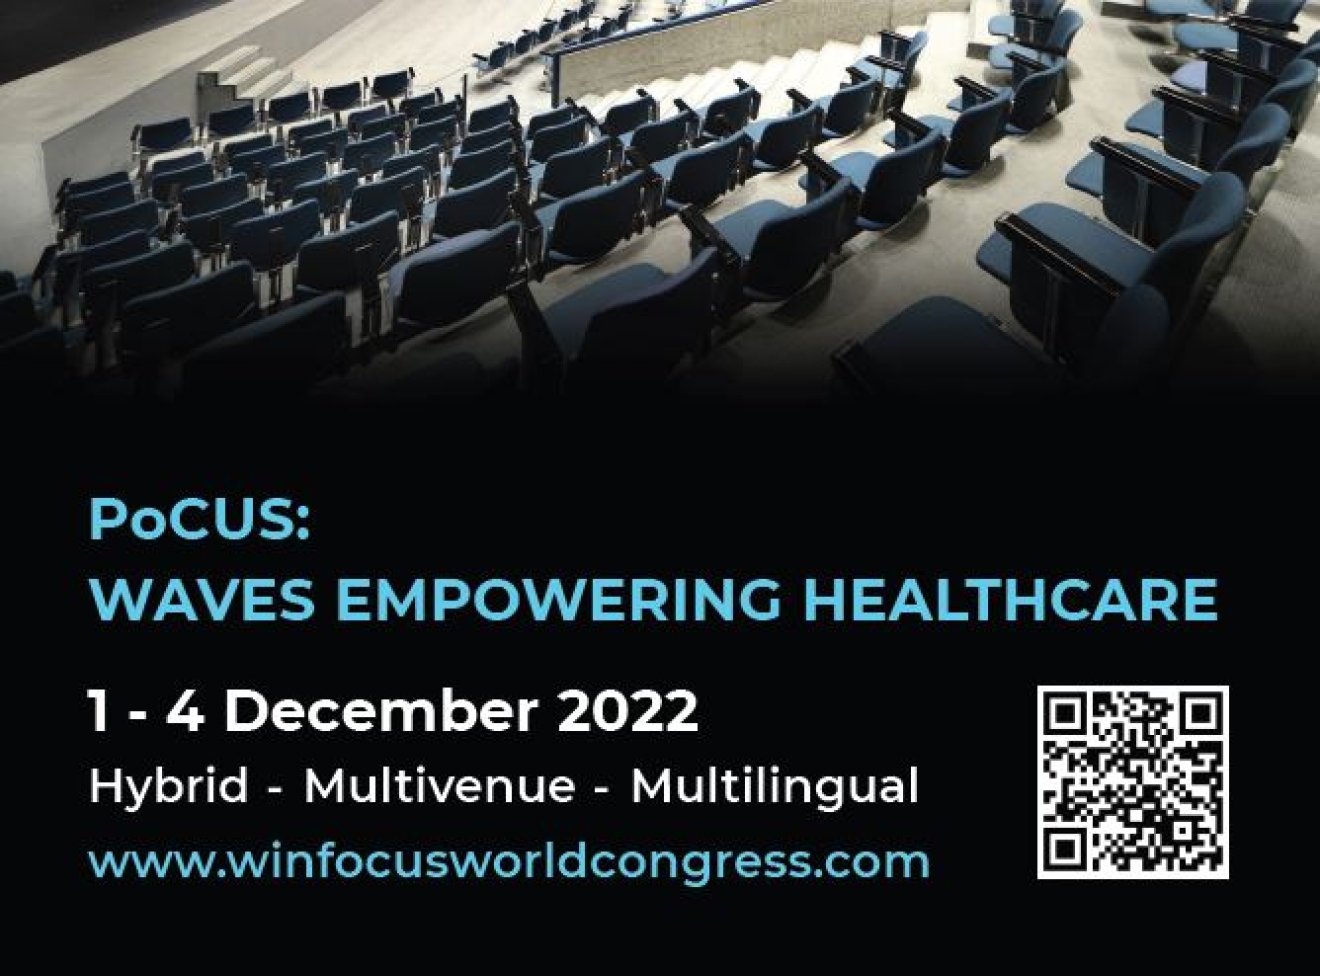 WINFOCUS World Congress 2022